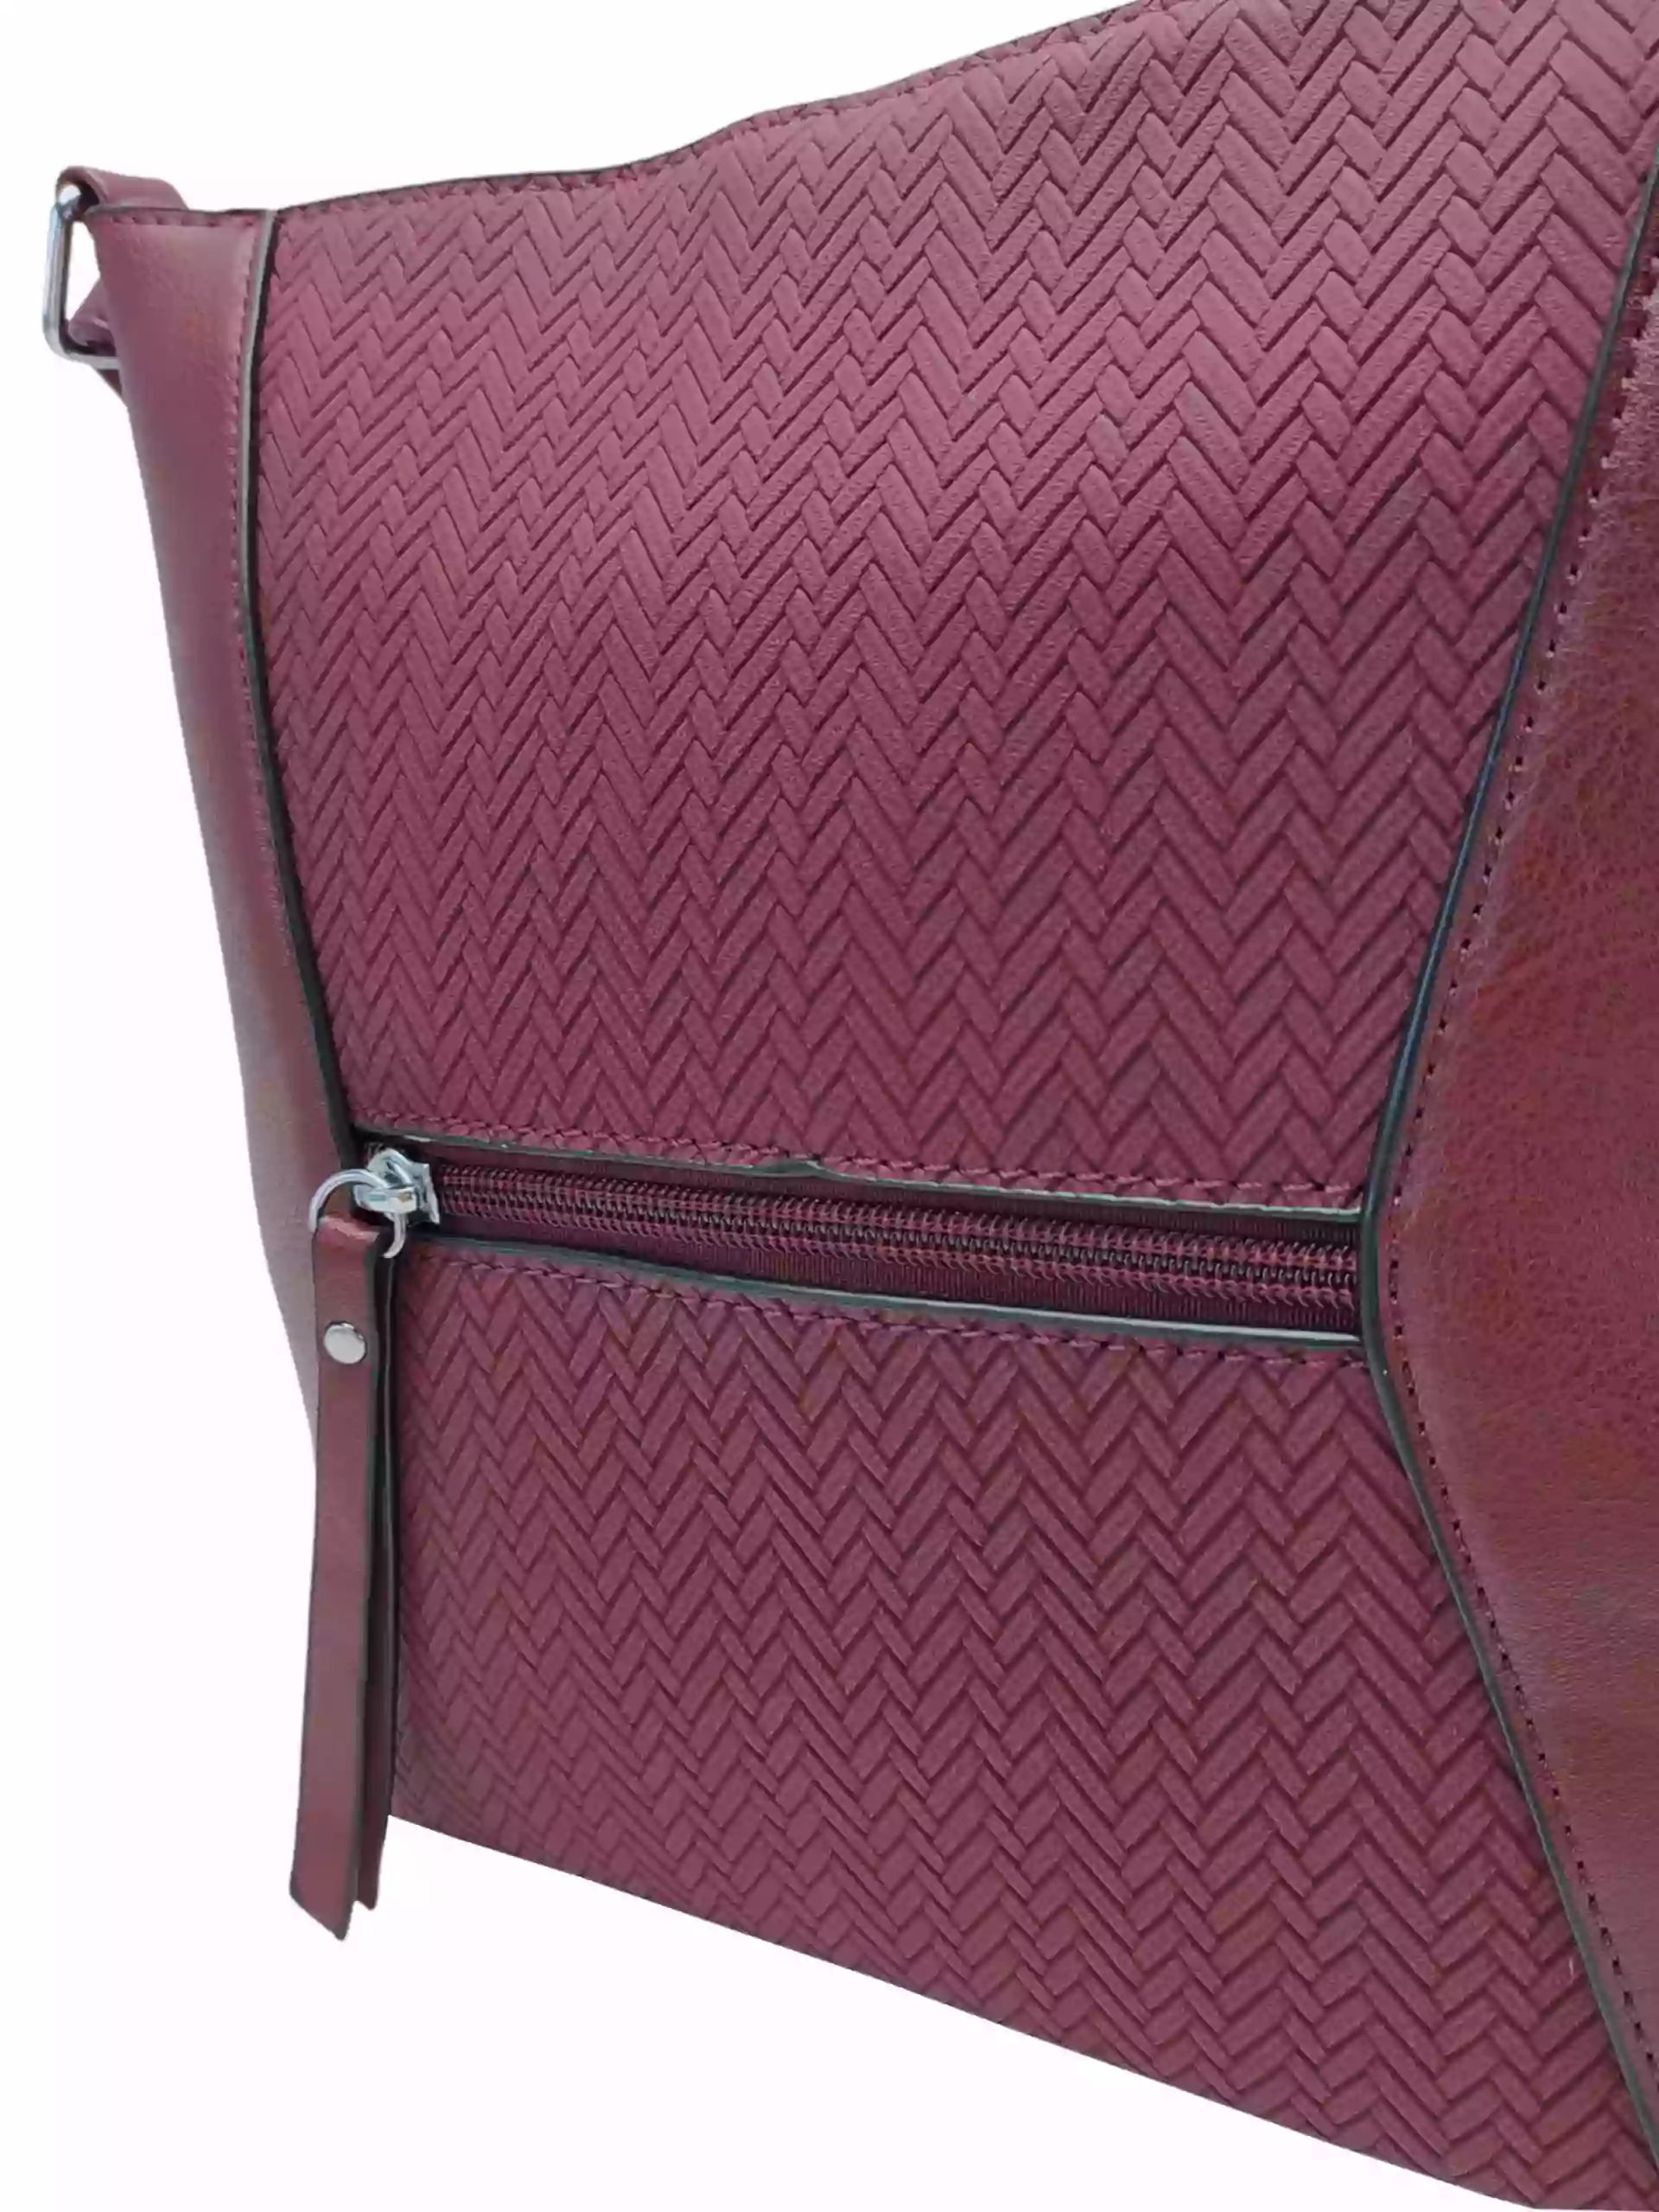 Stylová vínová/bordó crossbody kabelka se slušivým vzorem, Rosy Bag, NH8139, detail crossbody kabelky